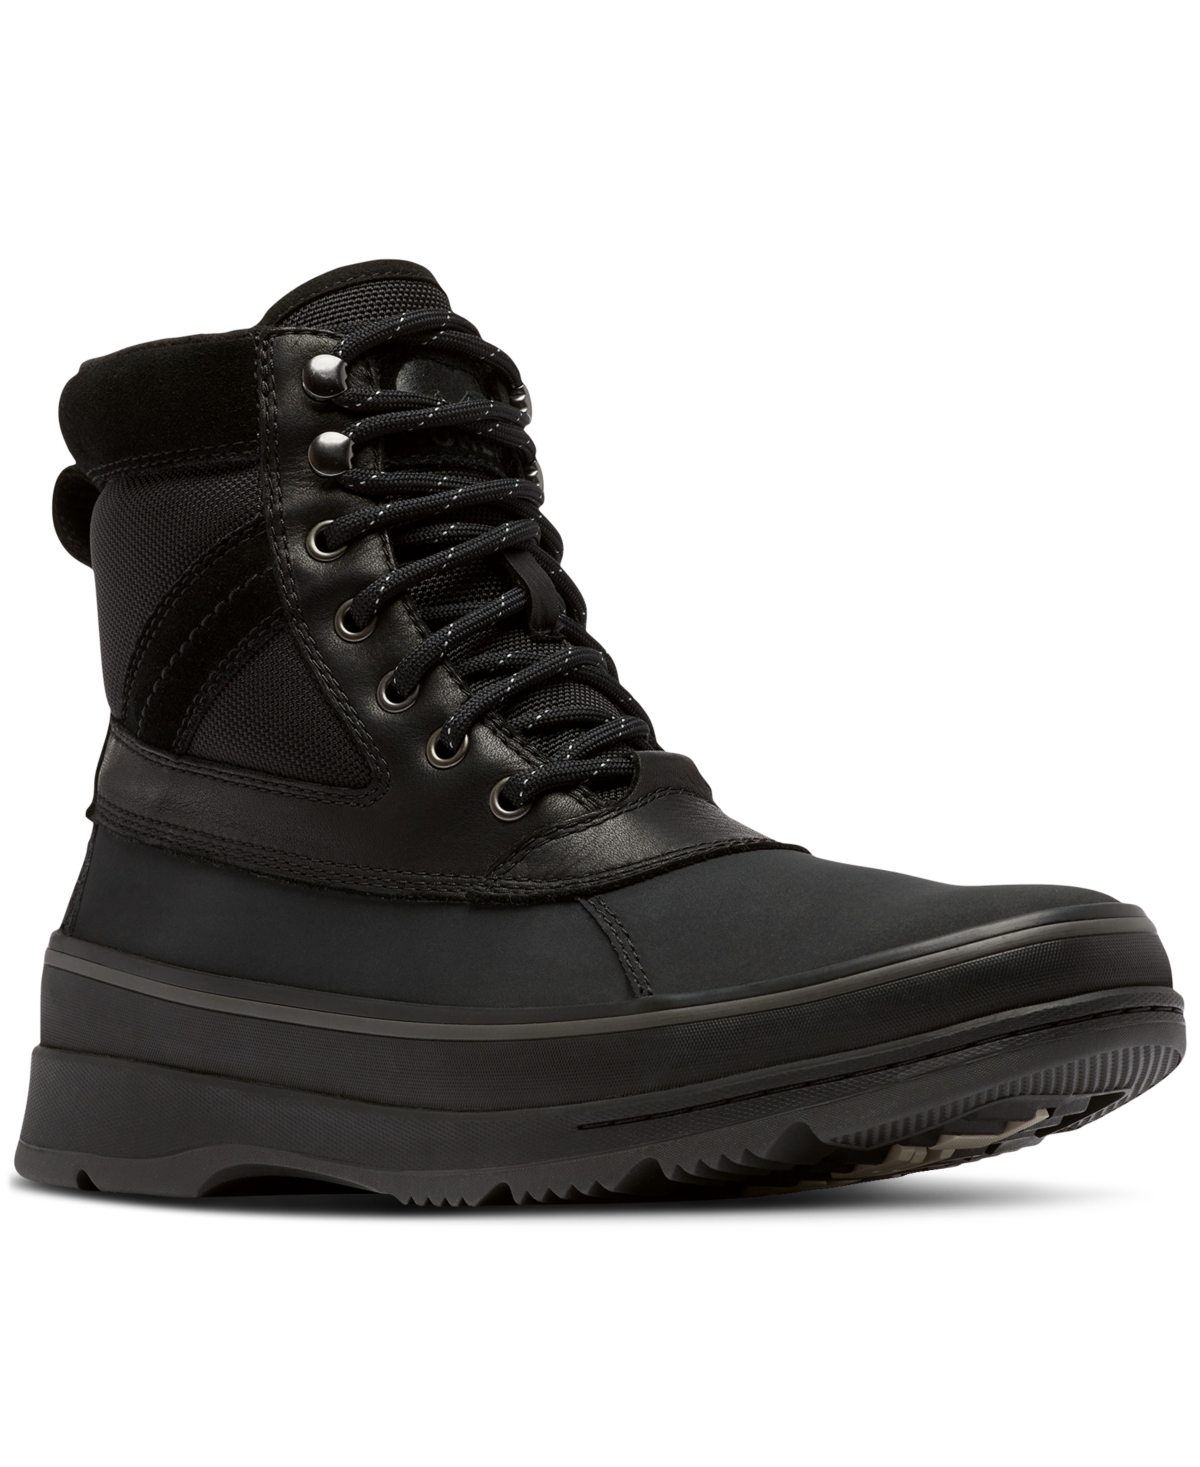 Men's Ankeny Ii Waterproof Boots - Black, Jet